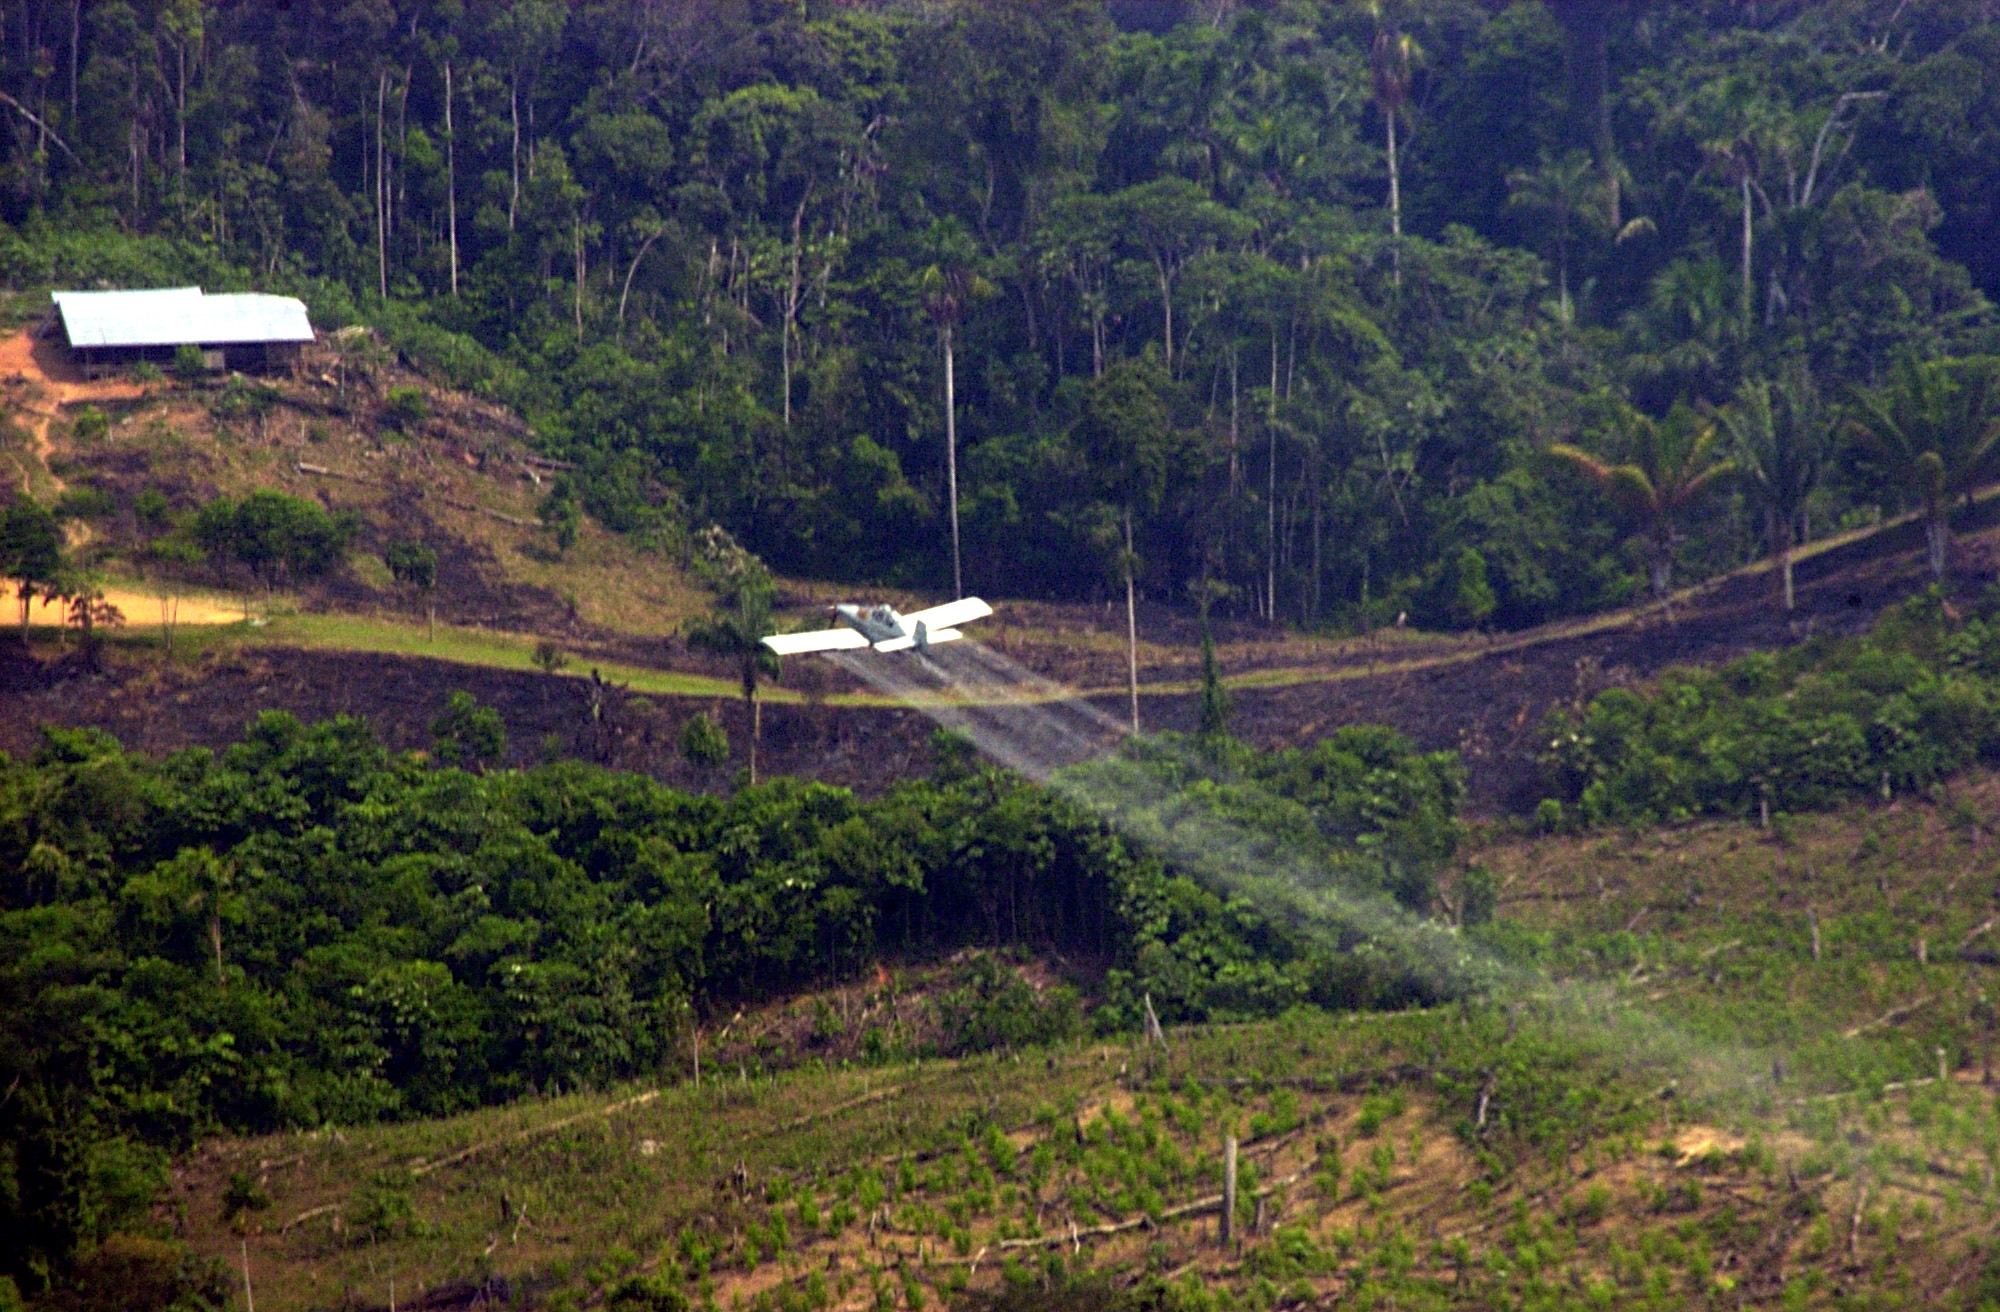 Coca, fumigaciones y daño ambiental | Drogas y conflicto en Colombia -  Perspectivas para la paz